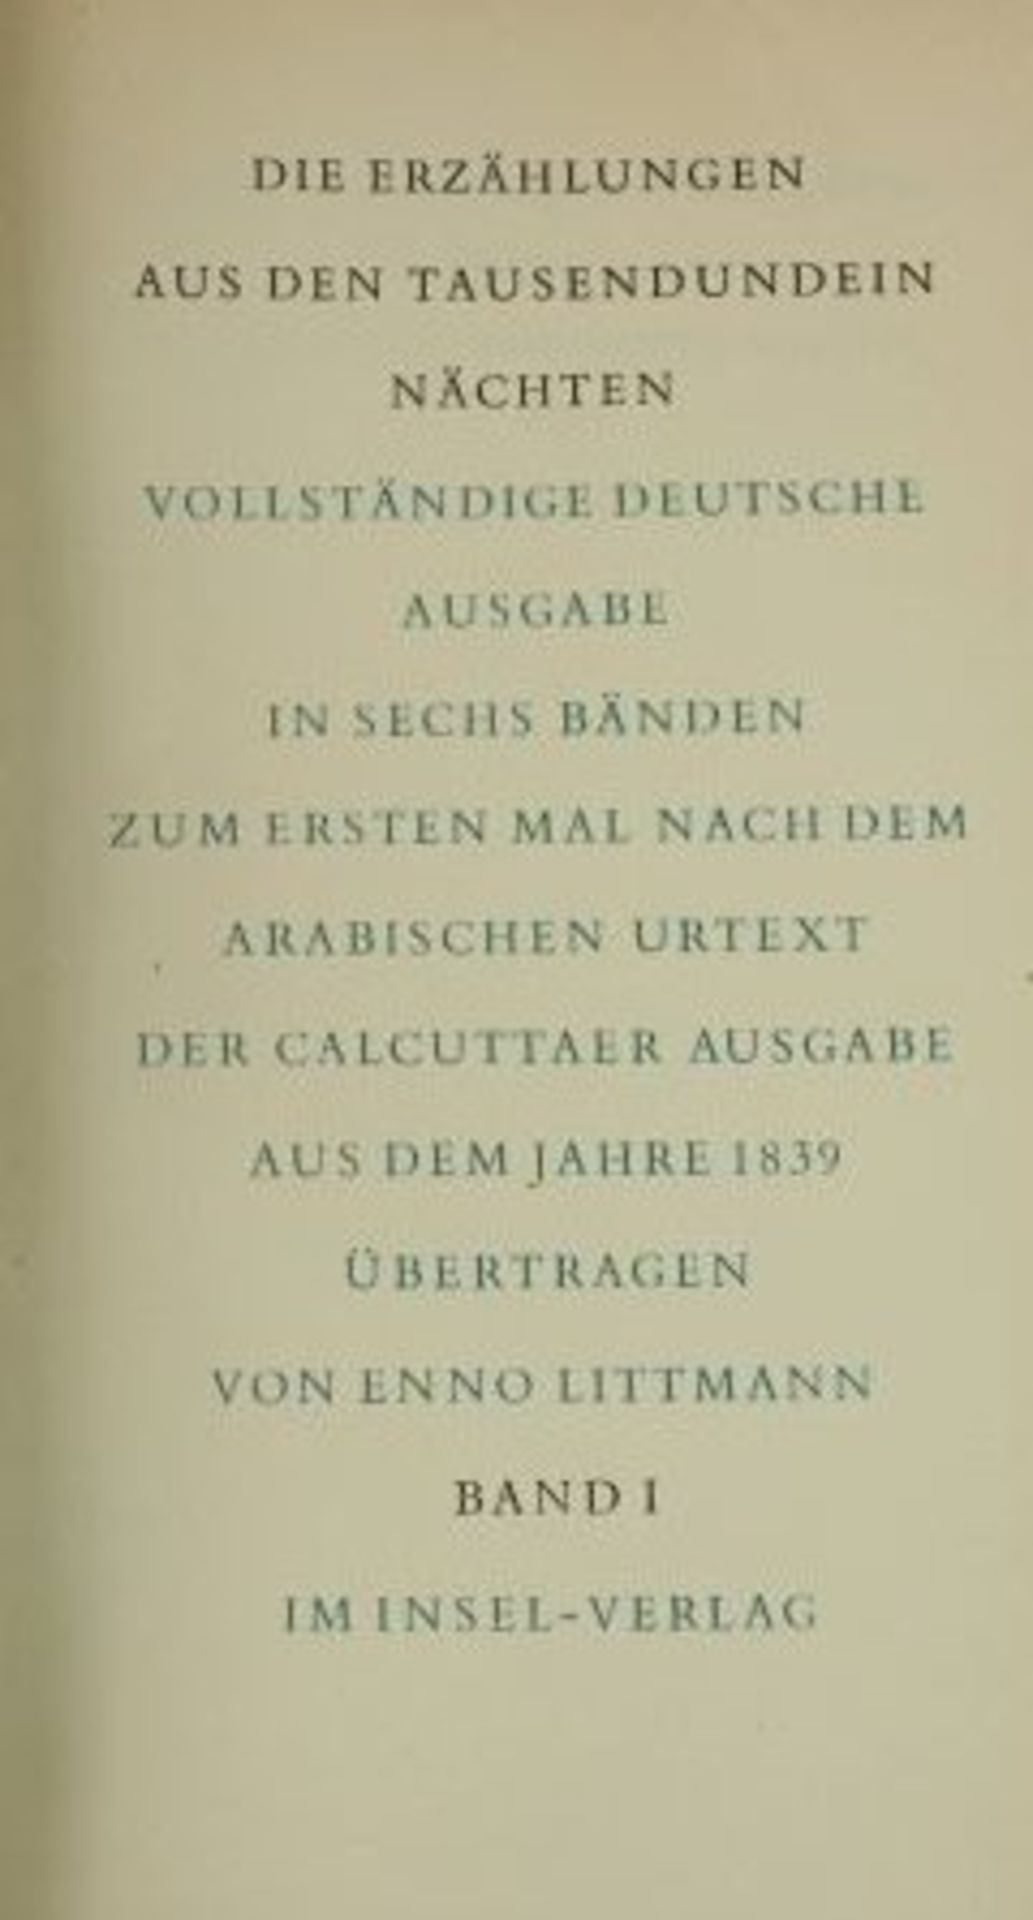 Die Erzählungen aus den Tausendundein Nächten, Band 1-6, 1953 - Bild 2 aus 2